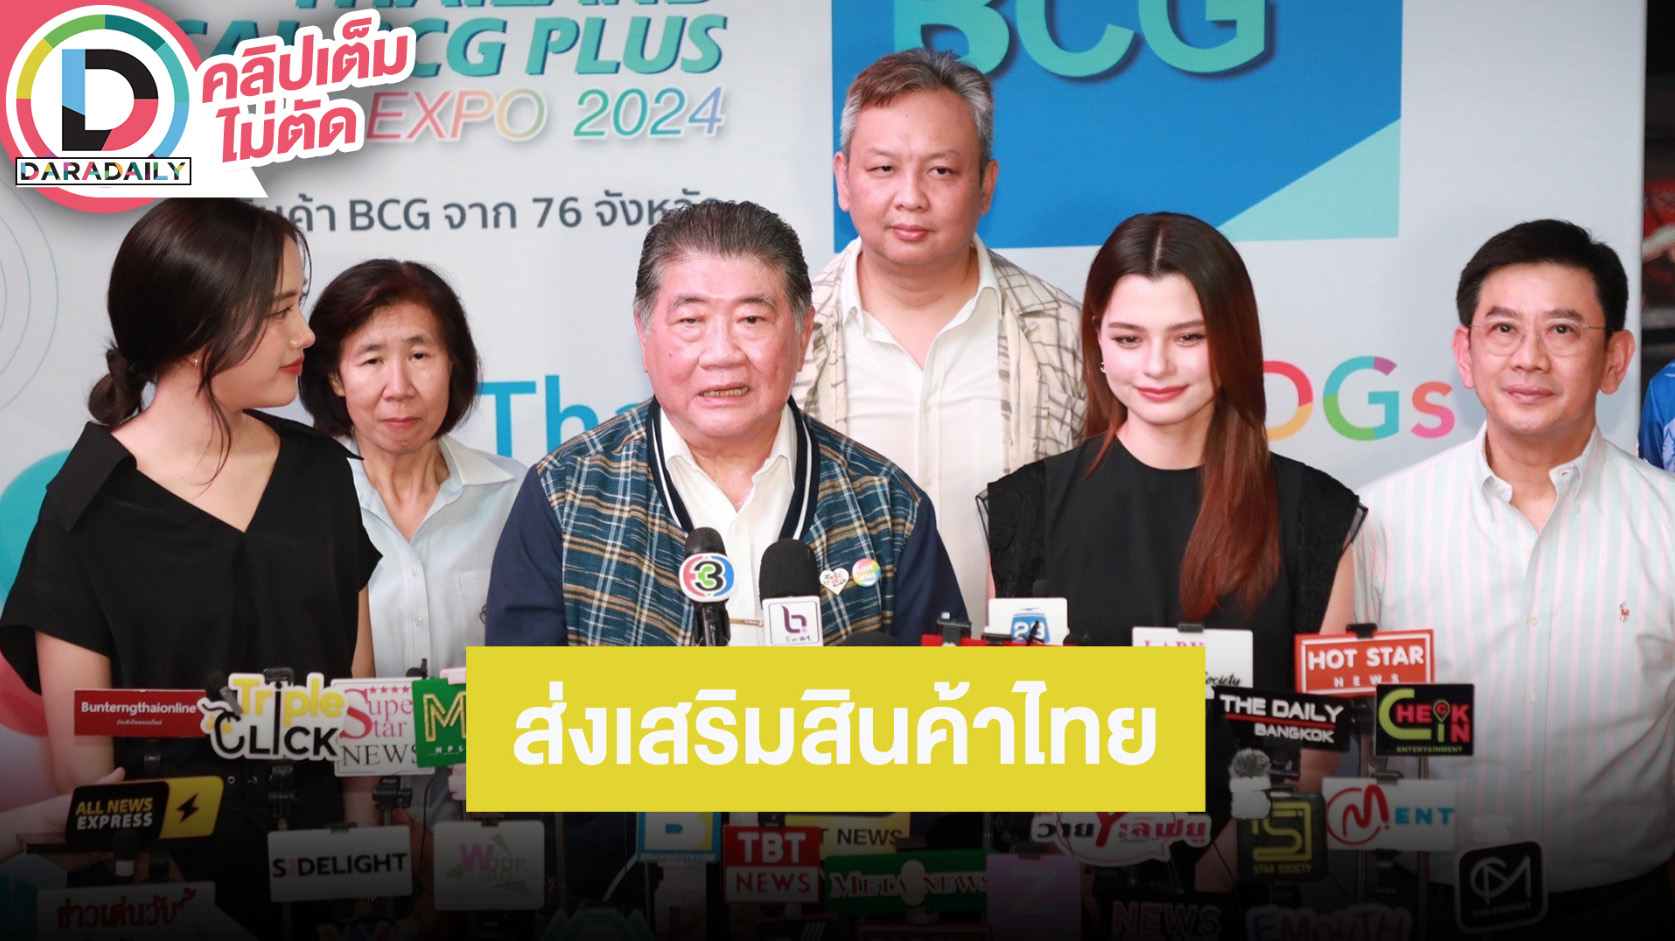 “พี่อ้วน” รัฐมนตรีว่าการกระทรวงพาณิชย์ “ฟรีน-เบ็คกี้” แถลง “THAILAND LOCAL BCG PLUS EXPO 2024”